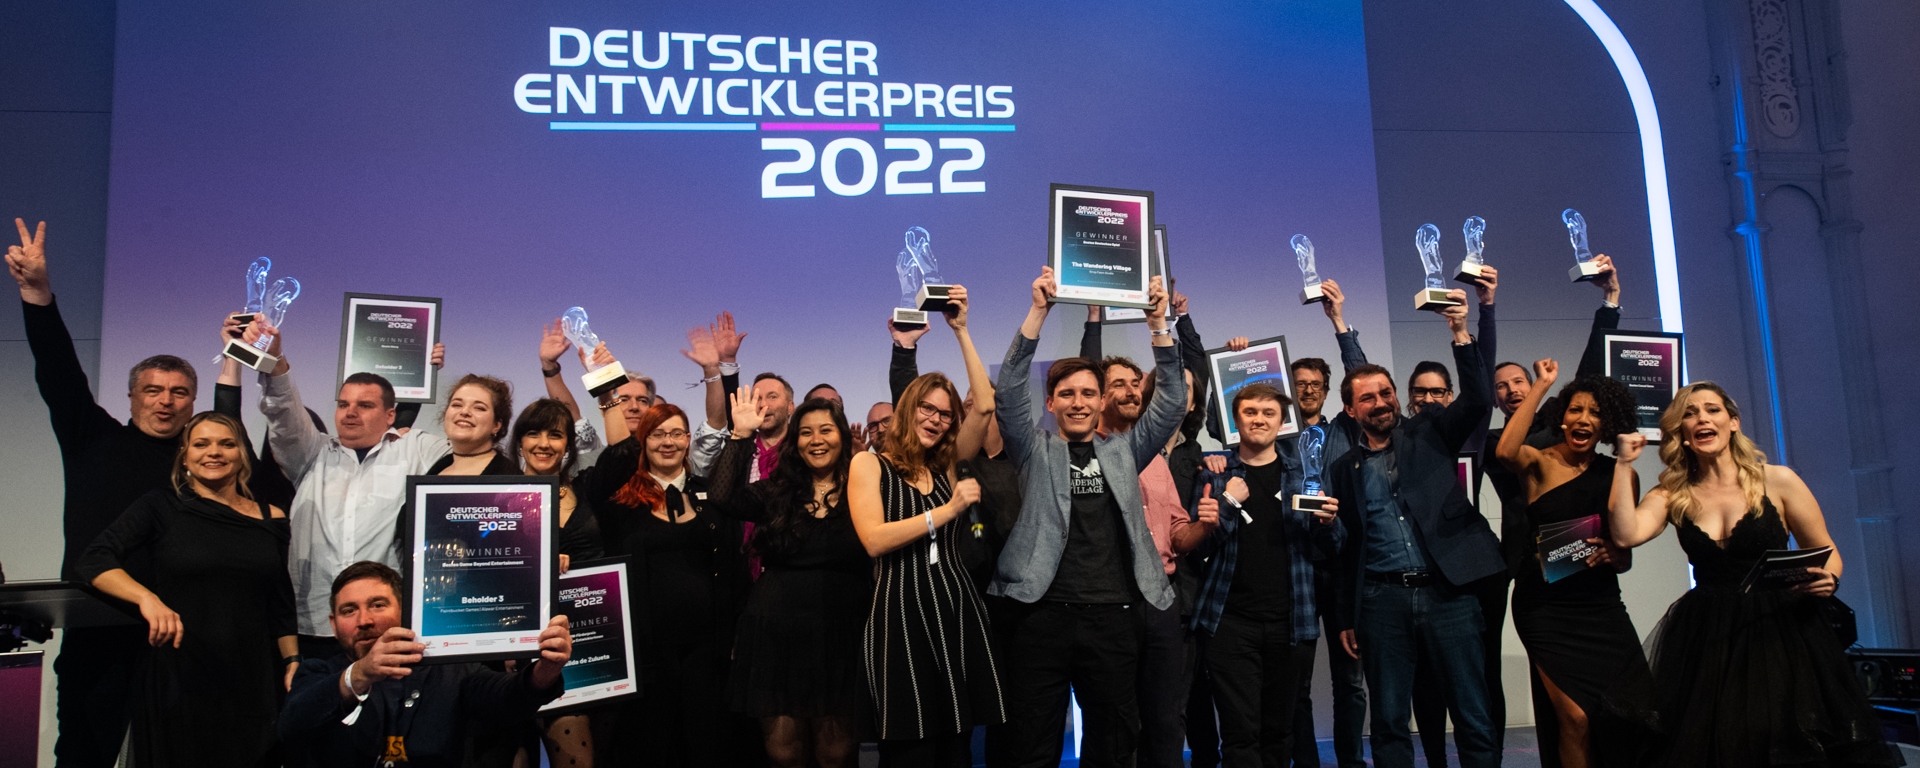 Die Gewinner des Deutscher Entwicklerpreis 2022,